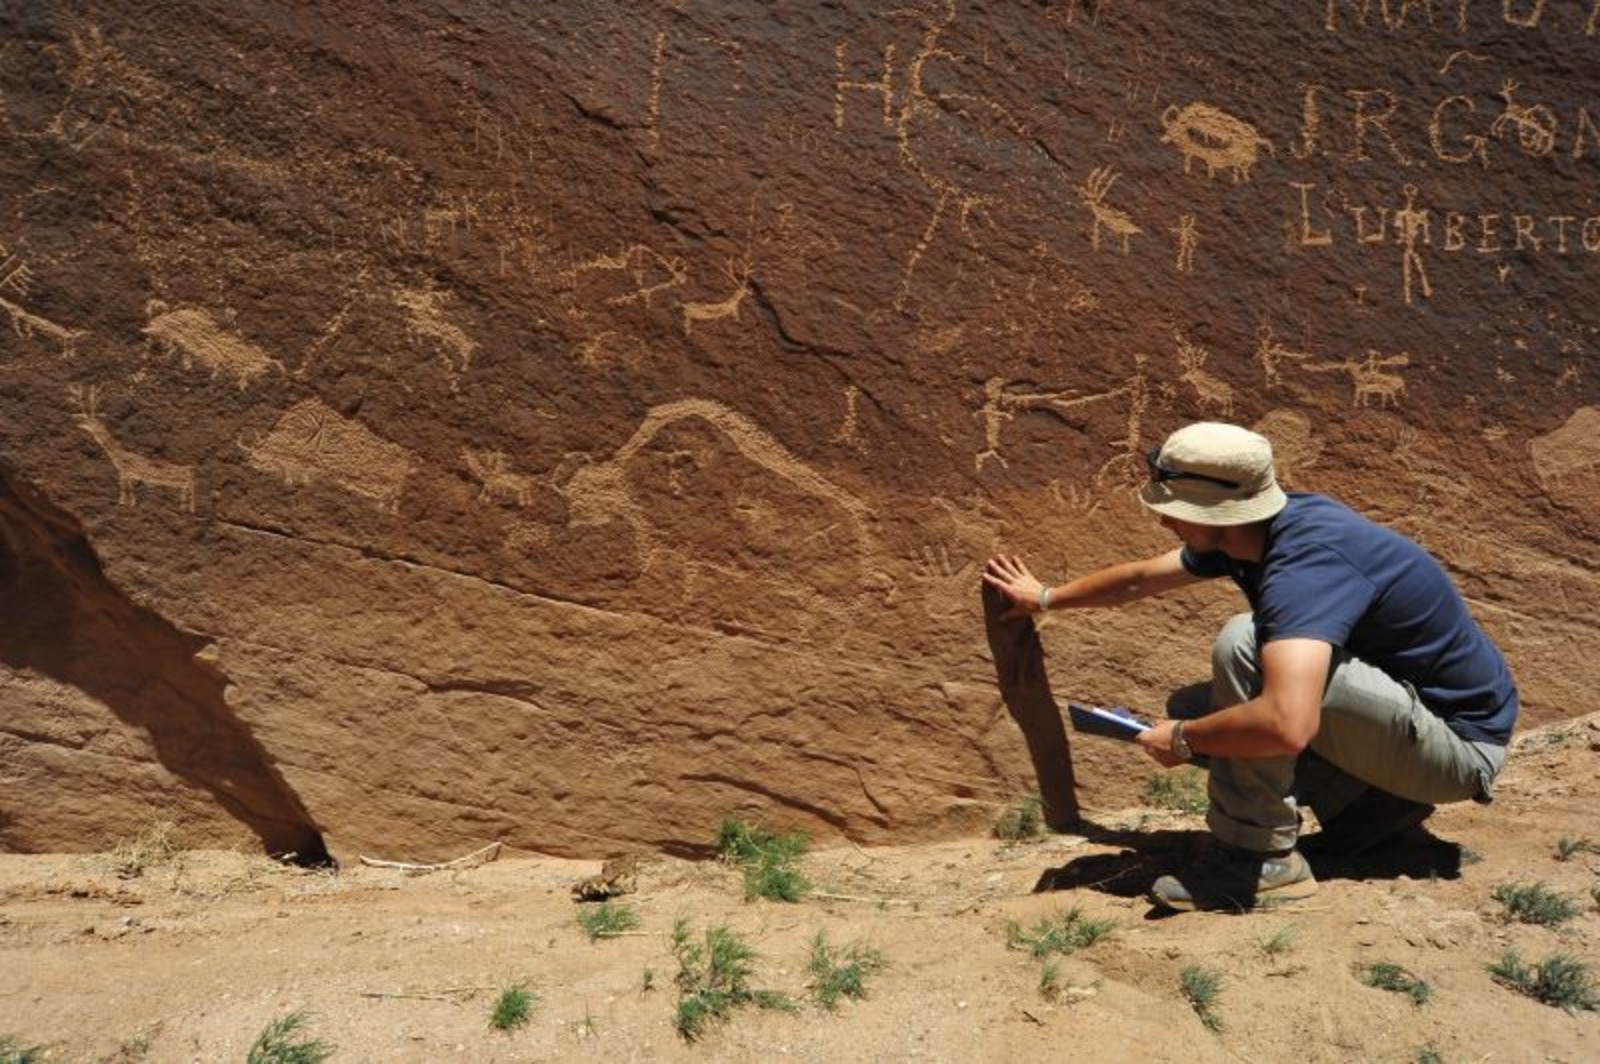 Un archéologue de l'université de Jagellon examine des pétroglyphes gravés dans un canyon du Colorado. © Université de Jagellon